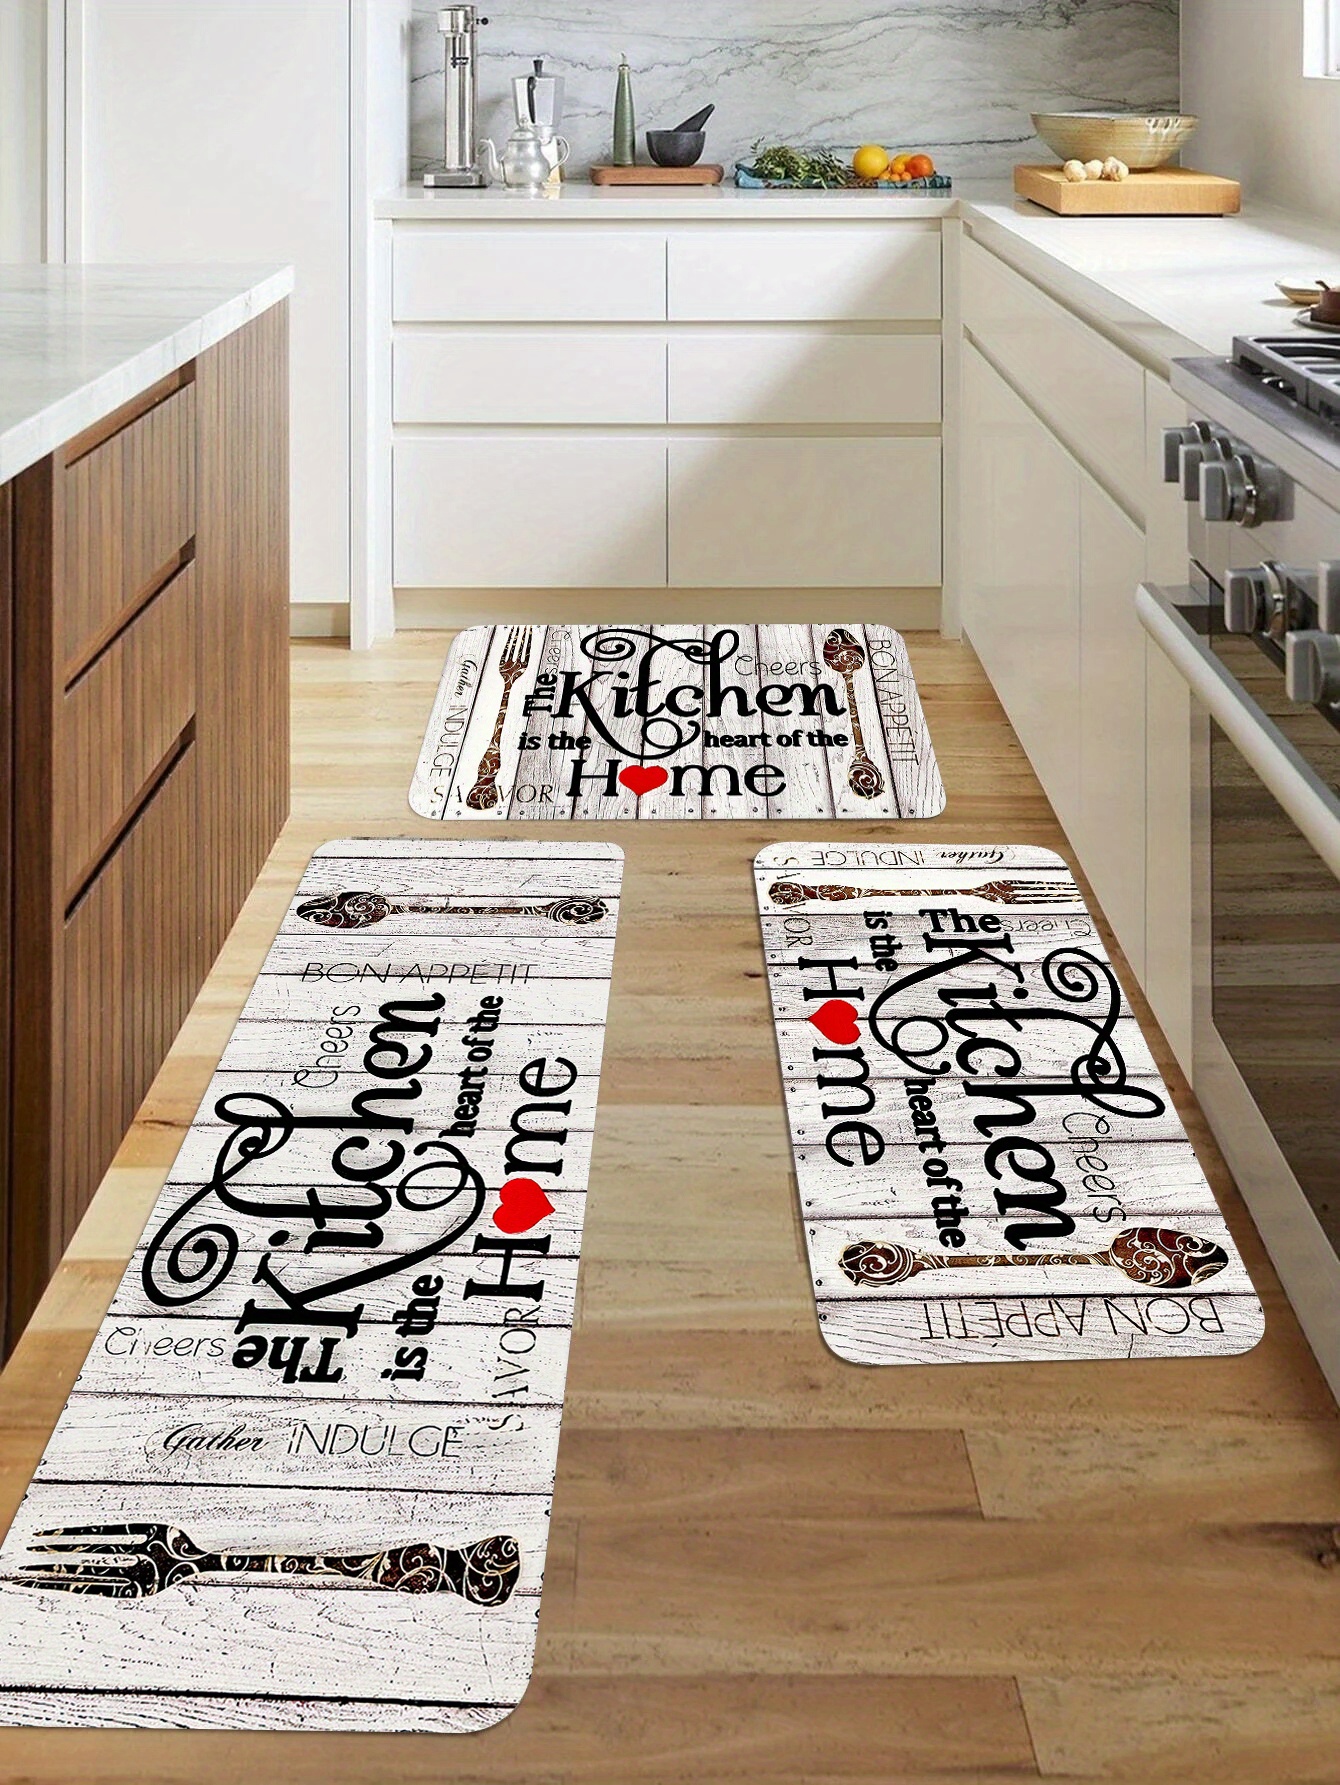 1pc Soft Kitchen Floor Mat, Non-slip Oilproof Waterproof Floor Mat